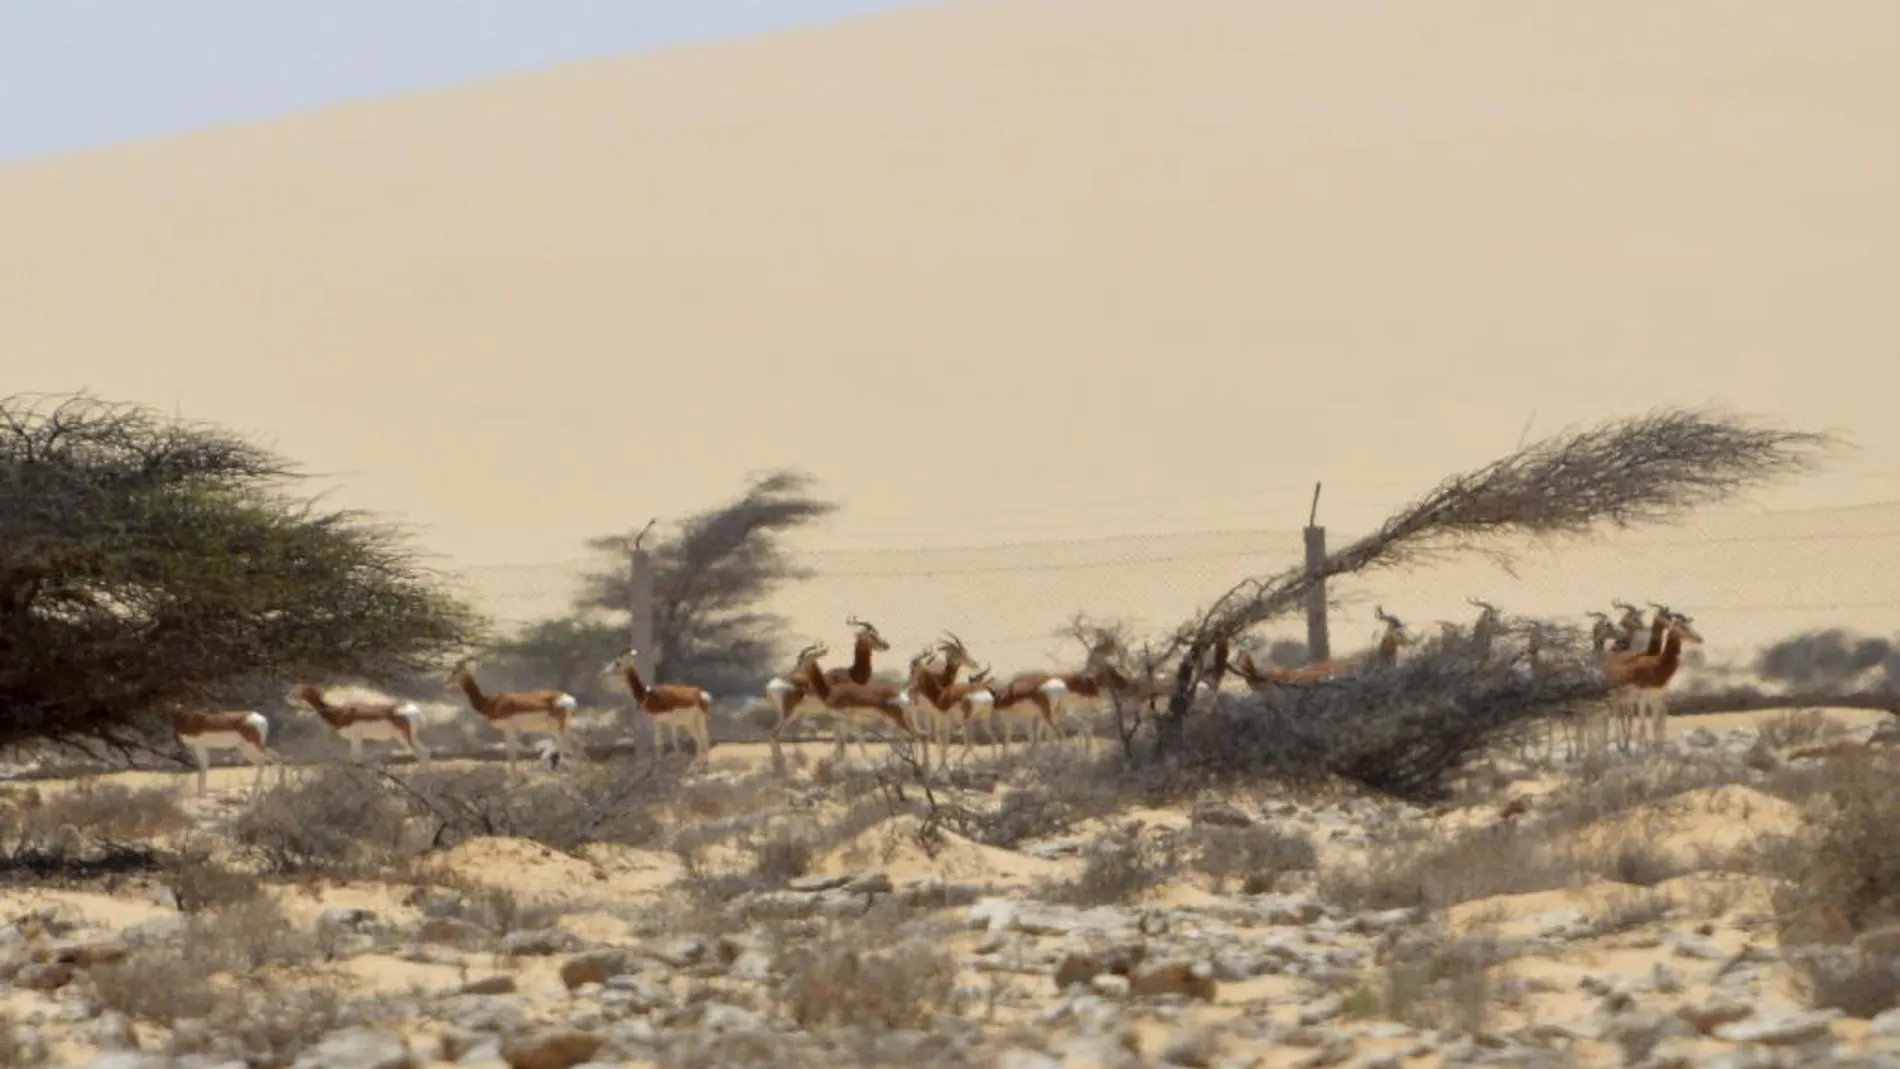 Fotografía facilitada por ecologie.ma, de varias gacelas mohor, que han regresado por fin a su casa, a las llanuras desérticas del sur del Sáhara